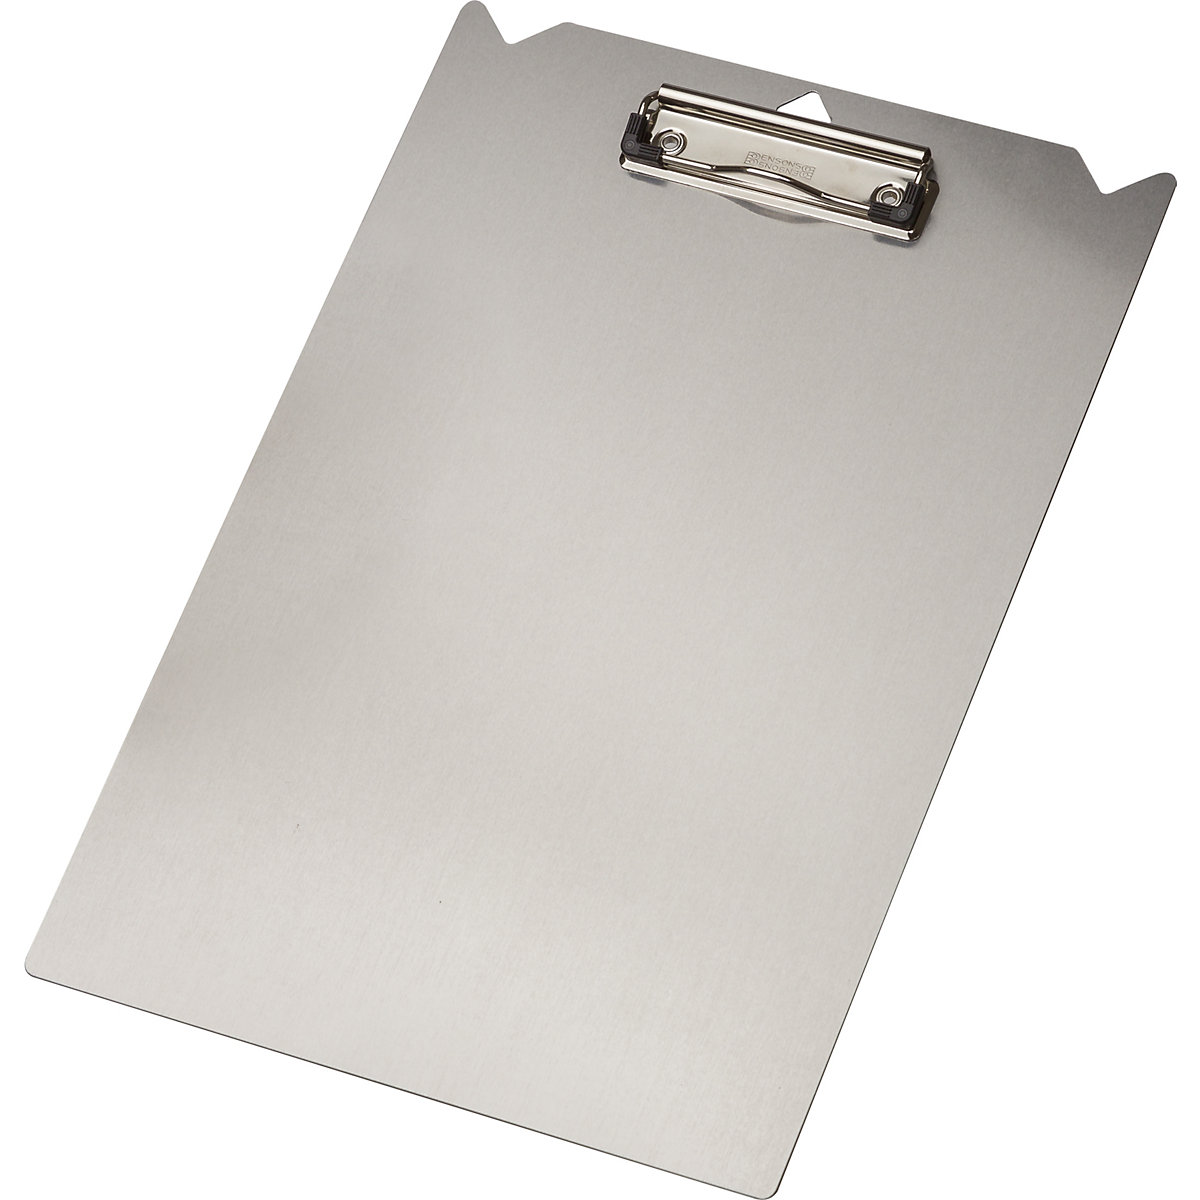 Aluminium clipboard – Tarifold